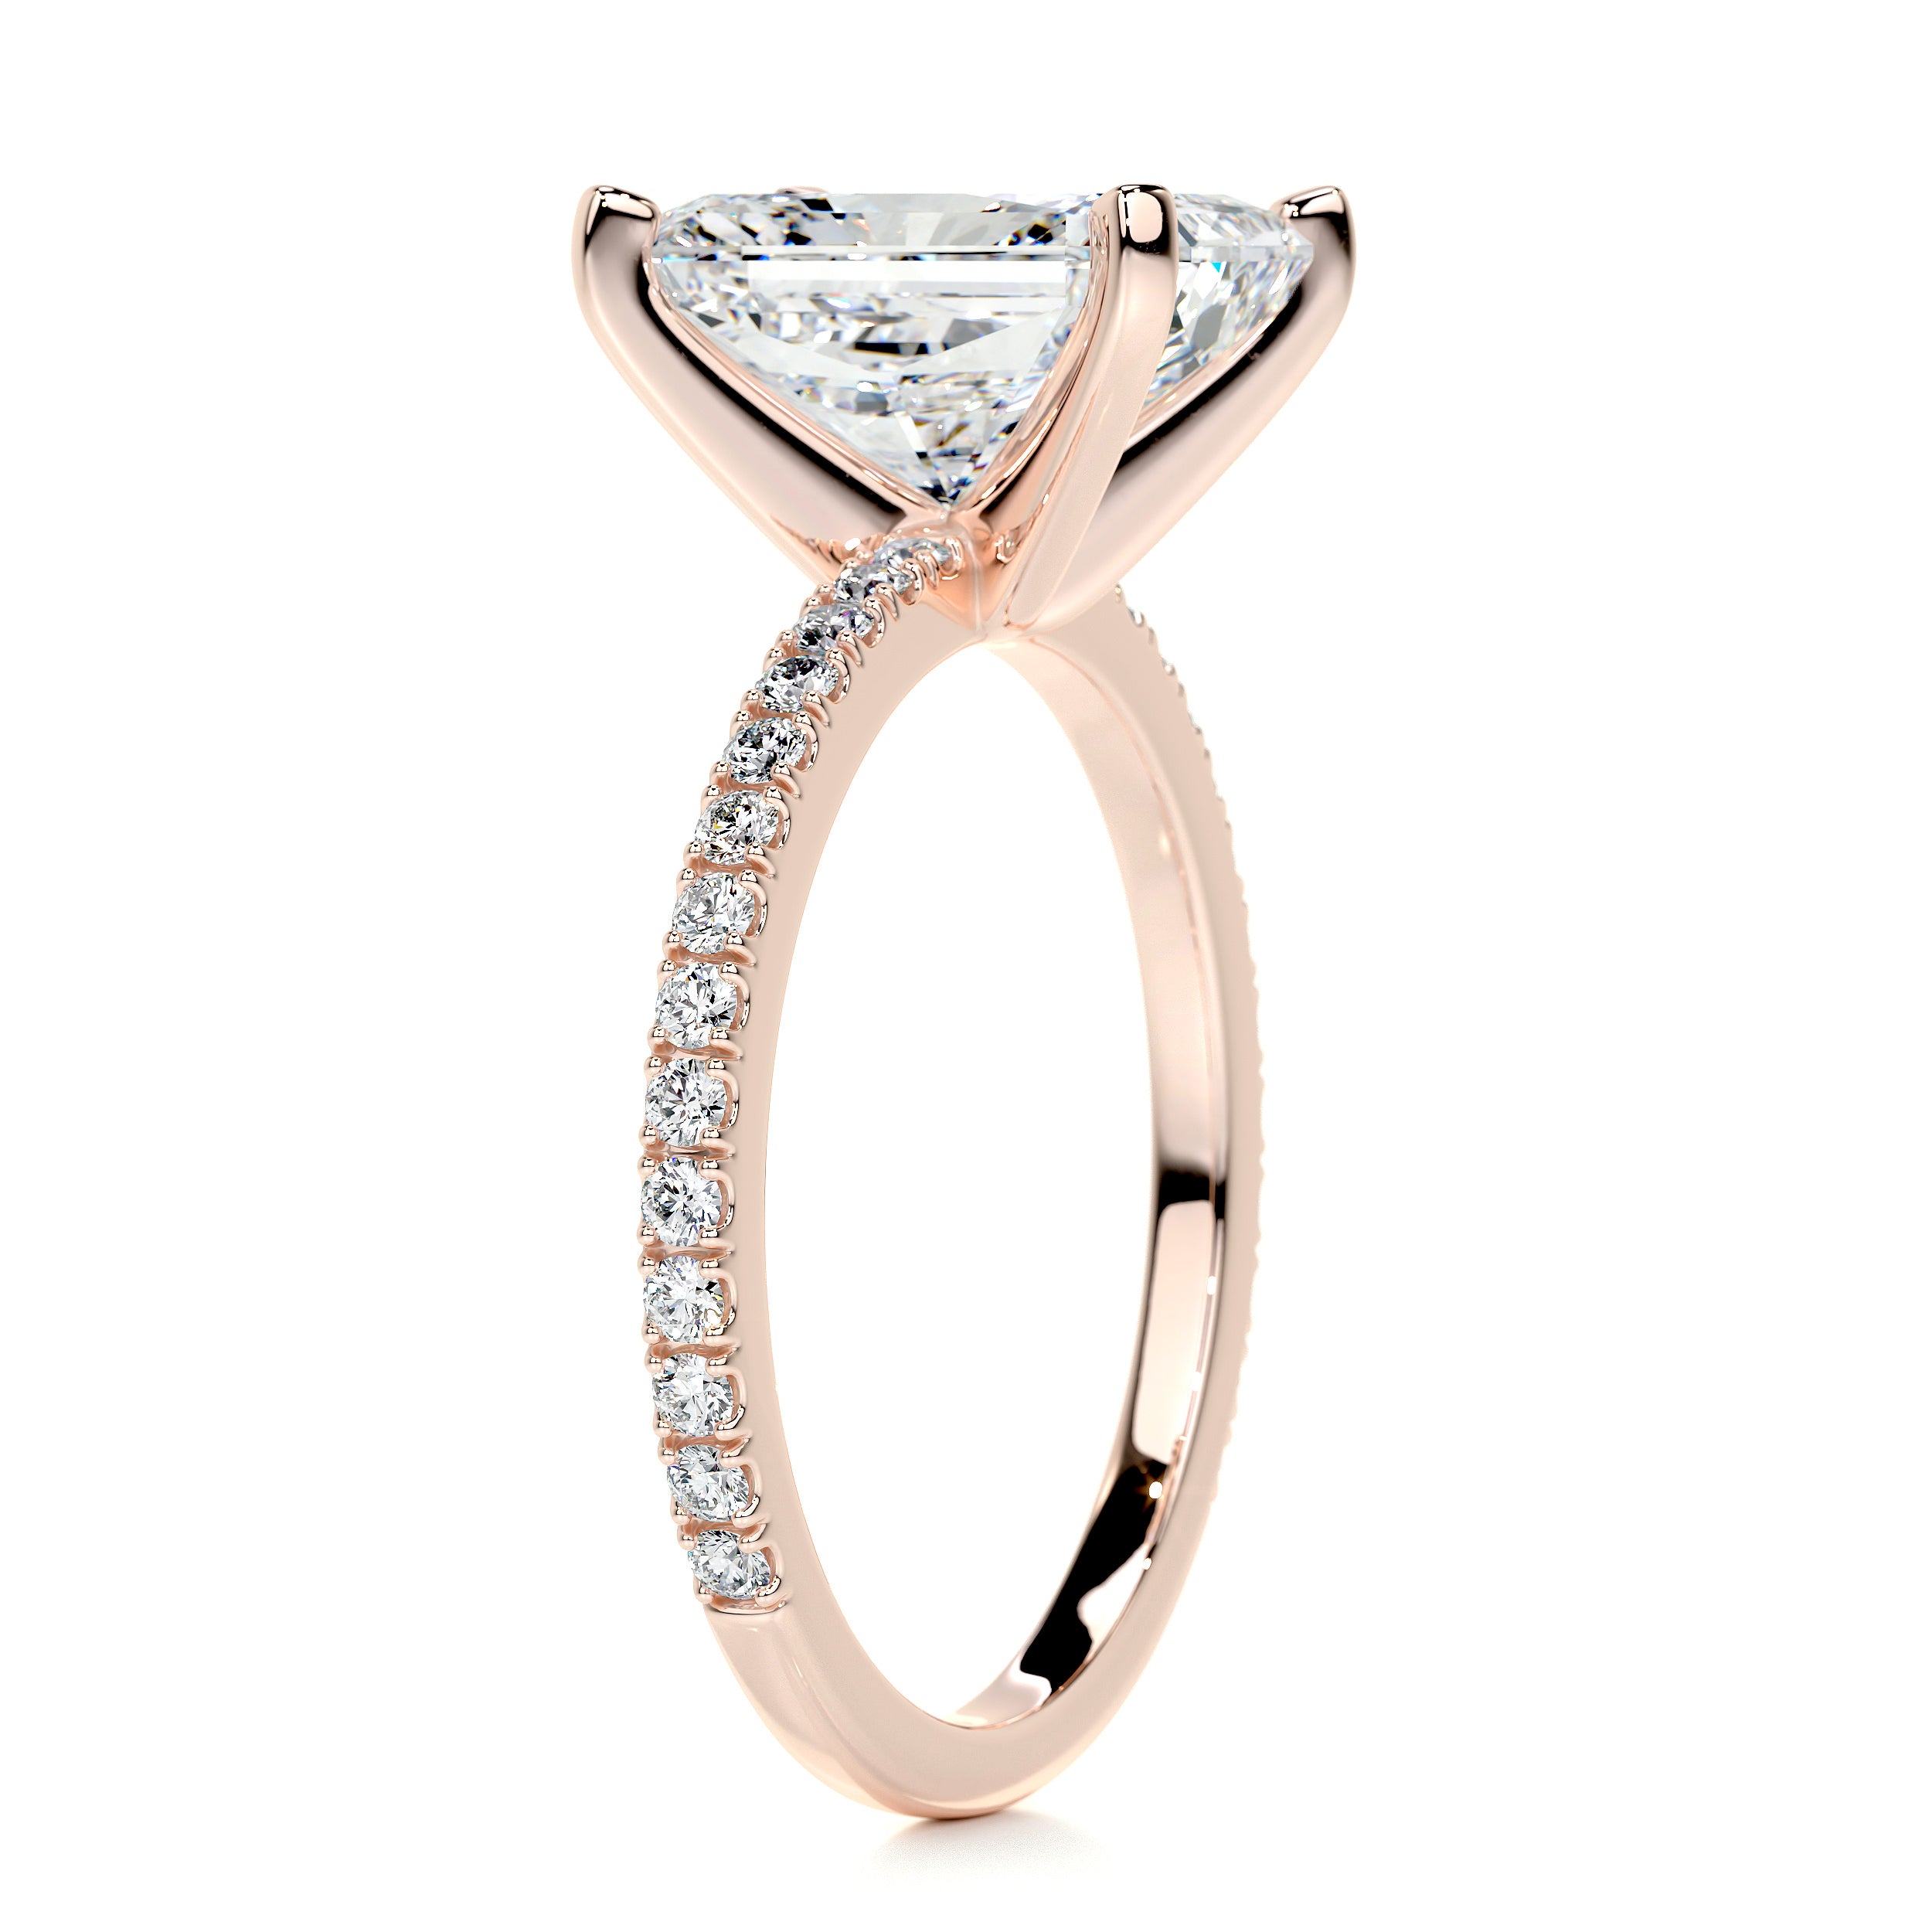 Audrey Diamond Engagement Ring   (3.5 Carat) -14K Rose Gold